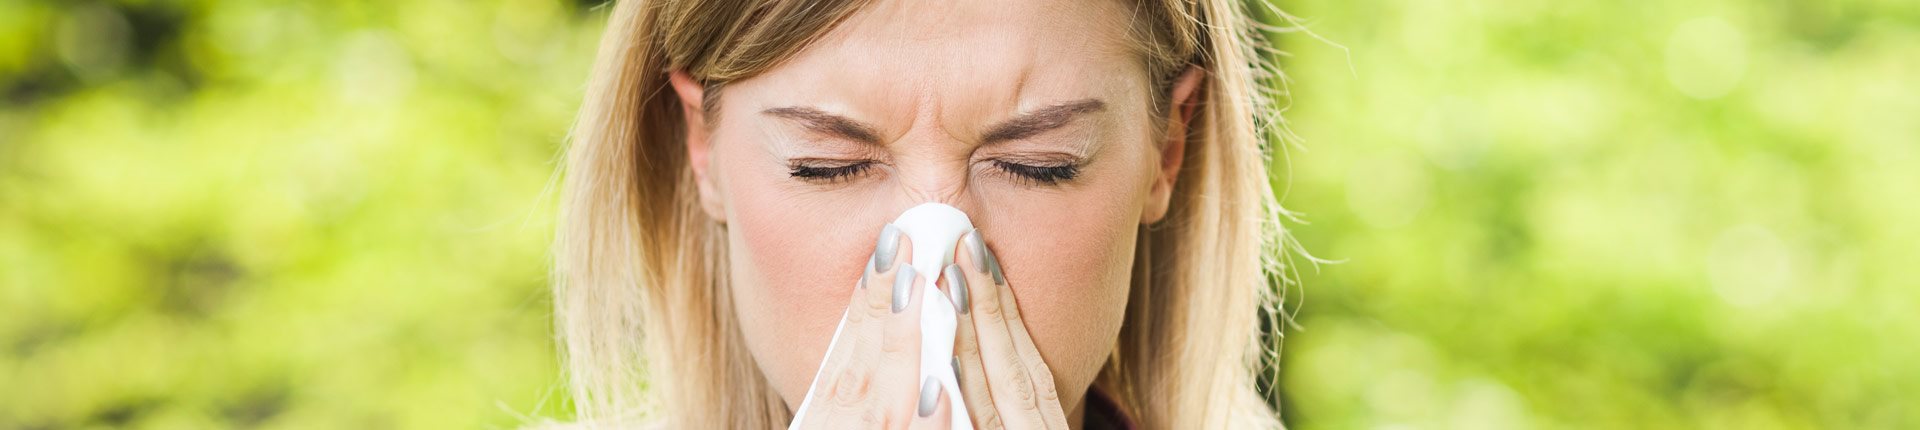 Alergie sezonowe - objawy, przyczyny, leczenie